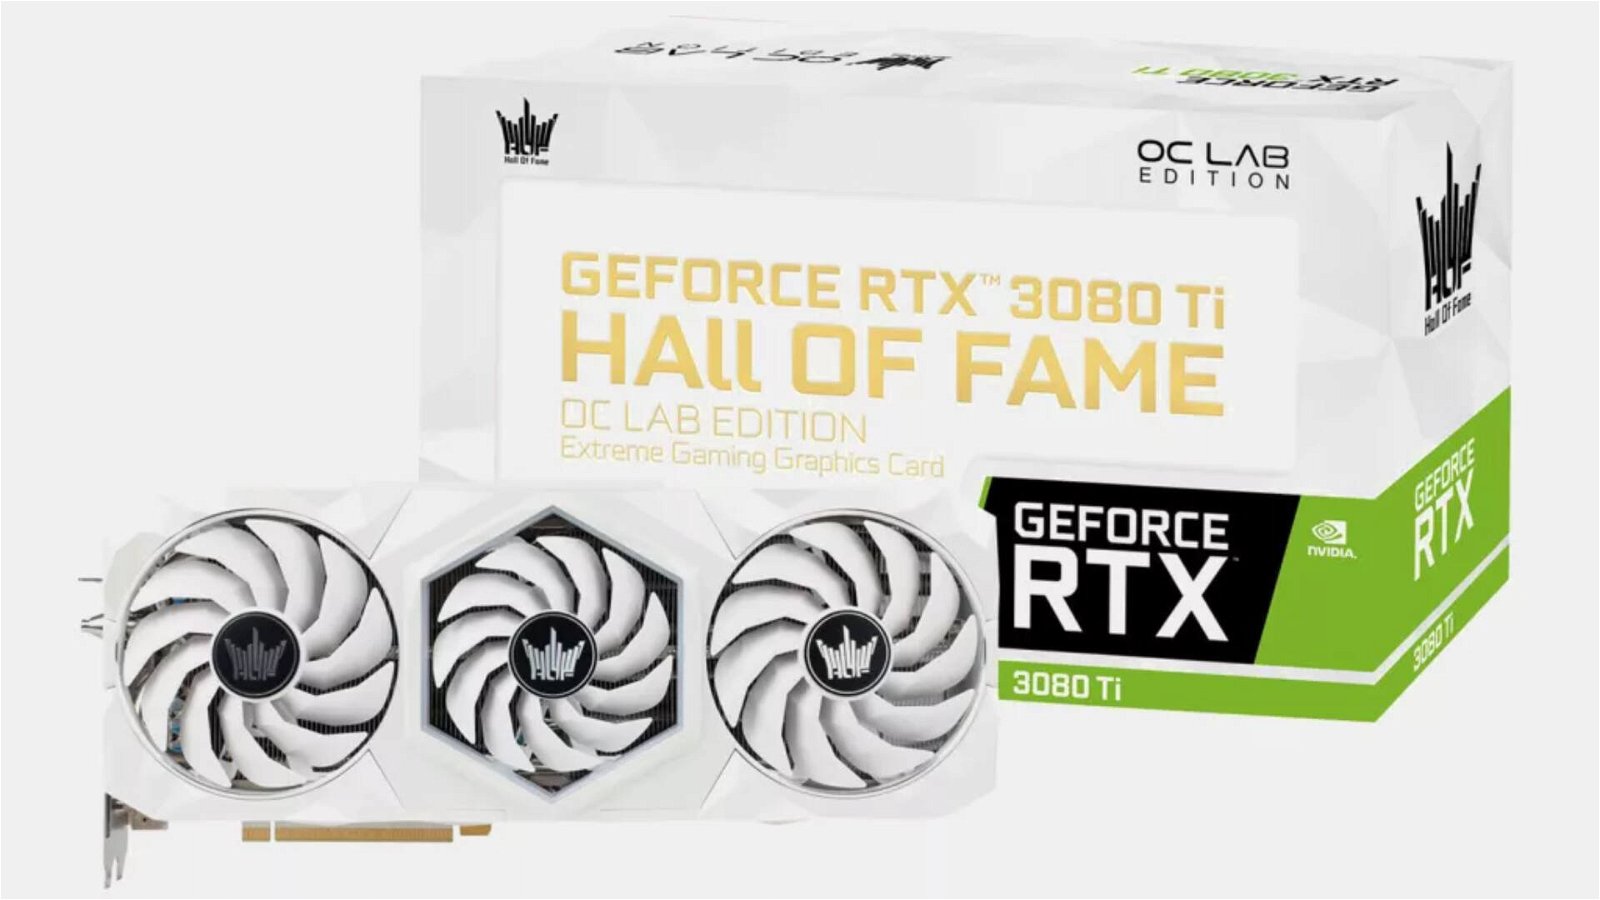 Immagine di Galax, ecco la splendida GeForce RTX 3080 Ti HOC OC Lab Edition